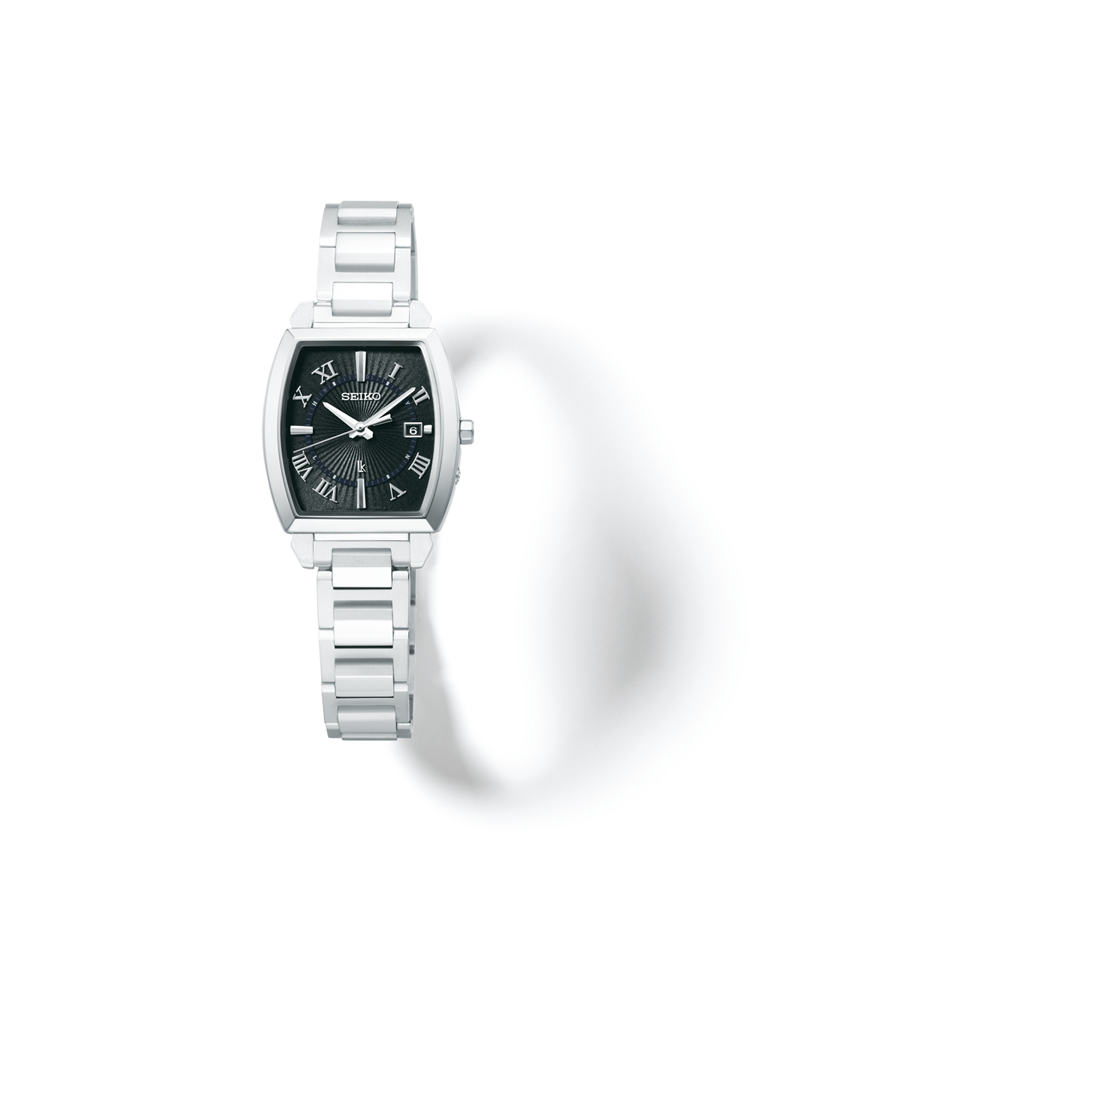 モデルが 時計ケースセット セイコー Seiko 腕時計 Ssqw059 ルキア Lukia レディース I Collection 新型チタン製ソーラー電波 アナログ チタンバンド 国内正規品 ホームショッピング 通販 Paypayモール カラーは